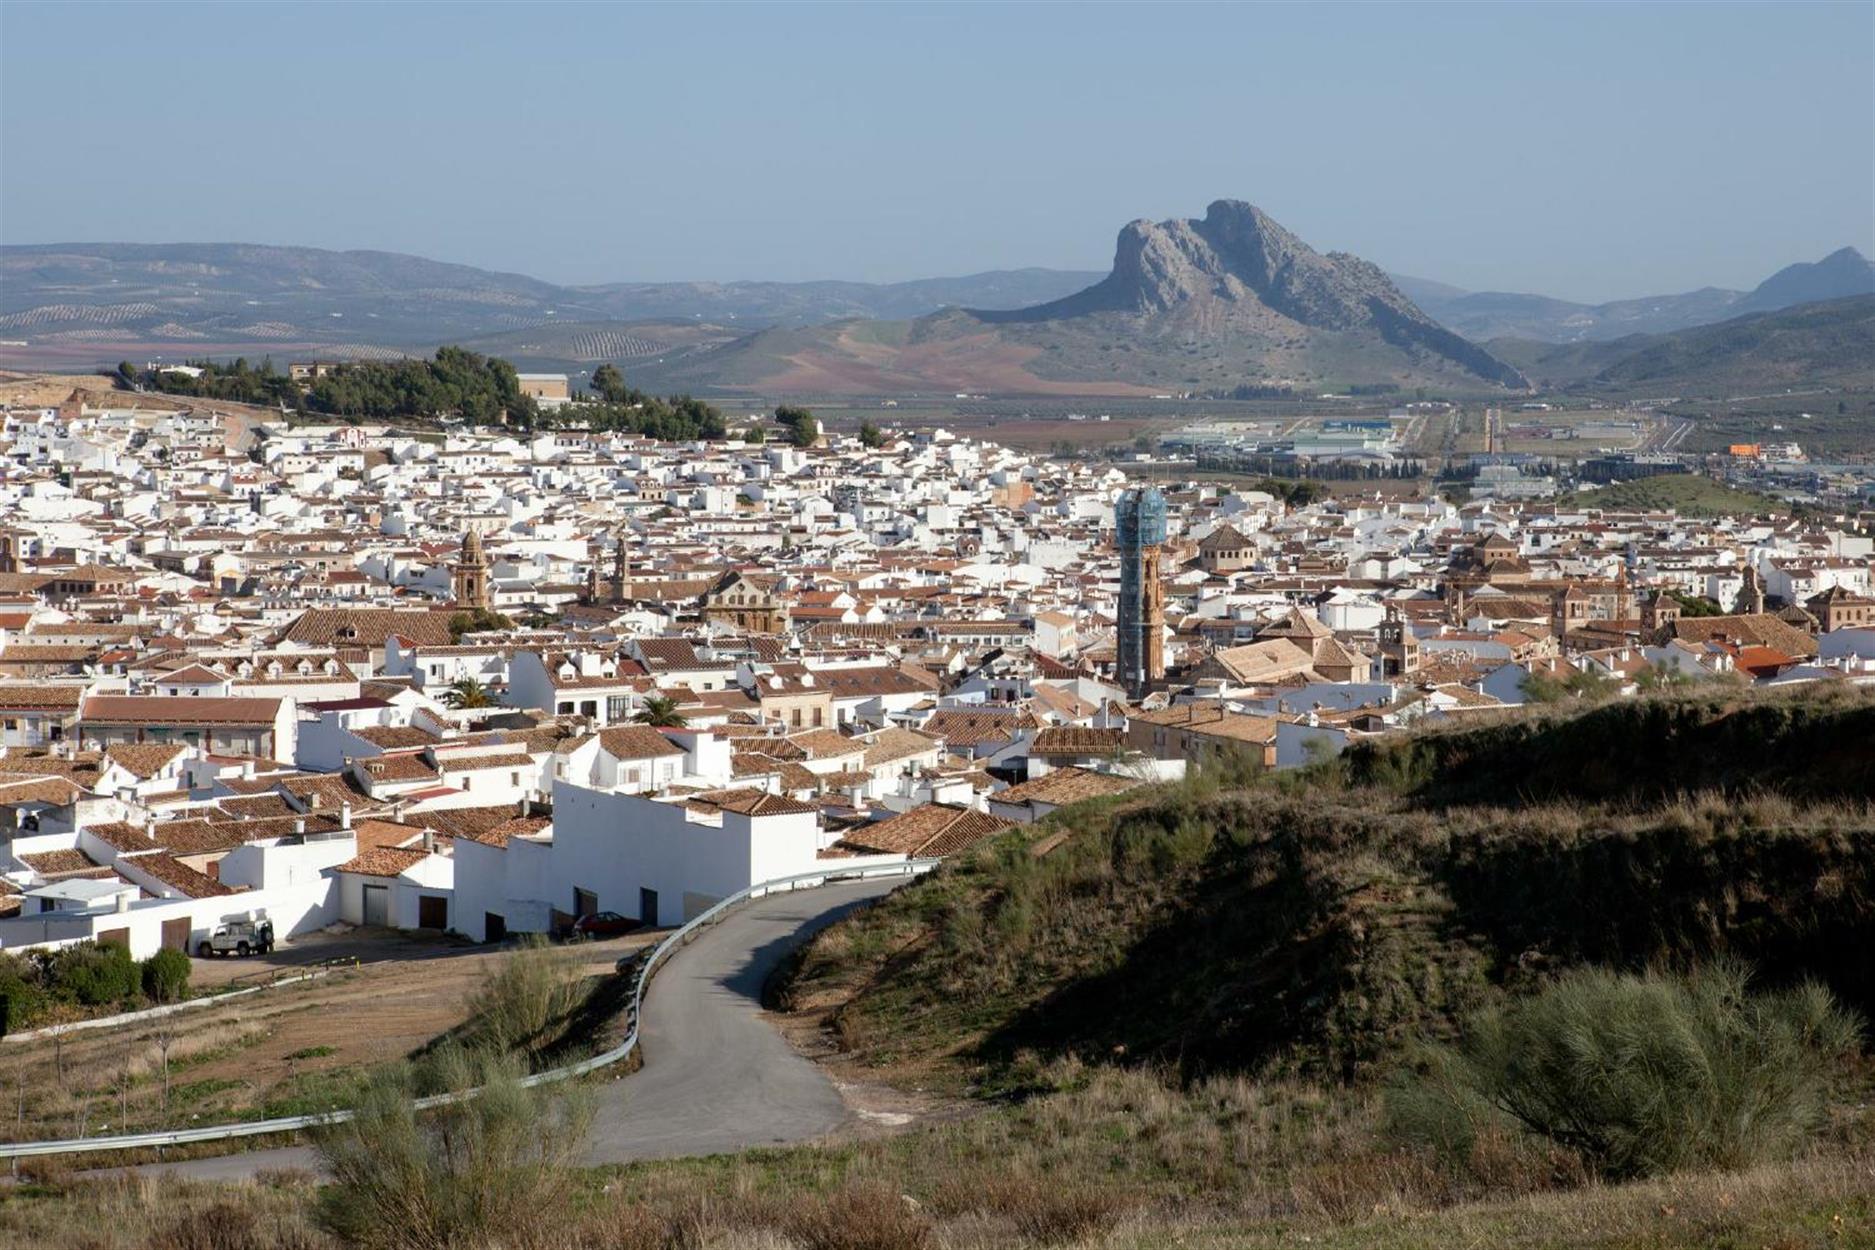 ... ist eine typische Stadt in Andalusien. Der Berg im Hintergrund erinnert an einen liegenden Kopf. Wir haben im Jahr 2002 einmal einen "Profilvergleich" fotografisch festgehalten, hier das damalige Ergebnis.